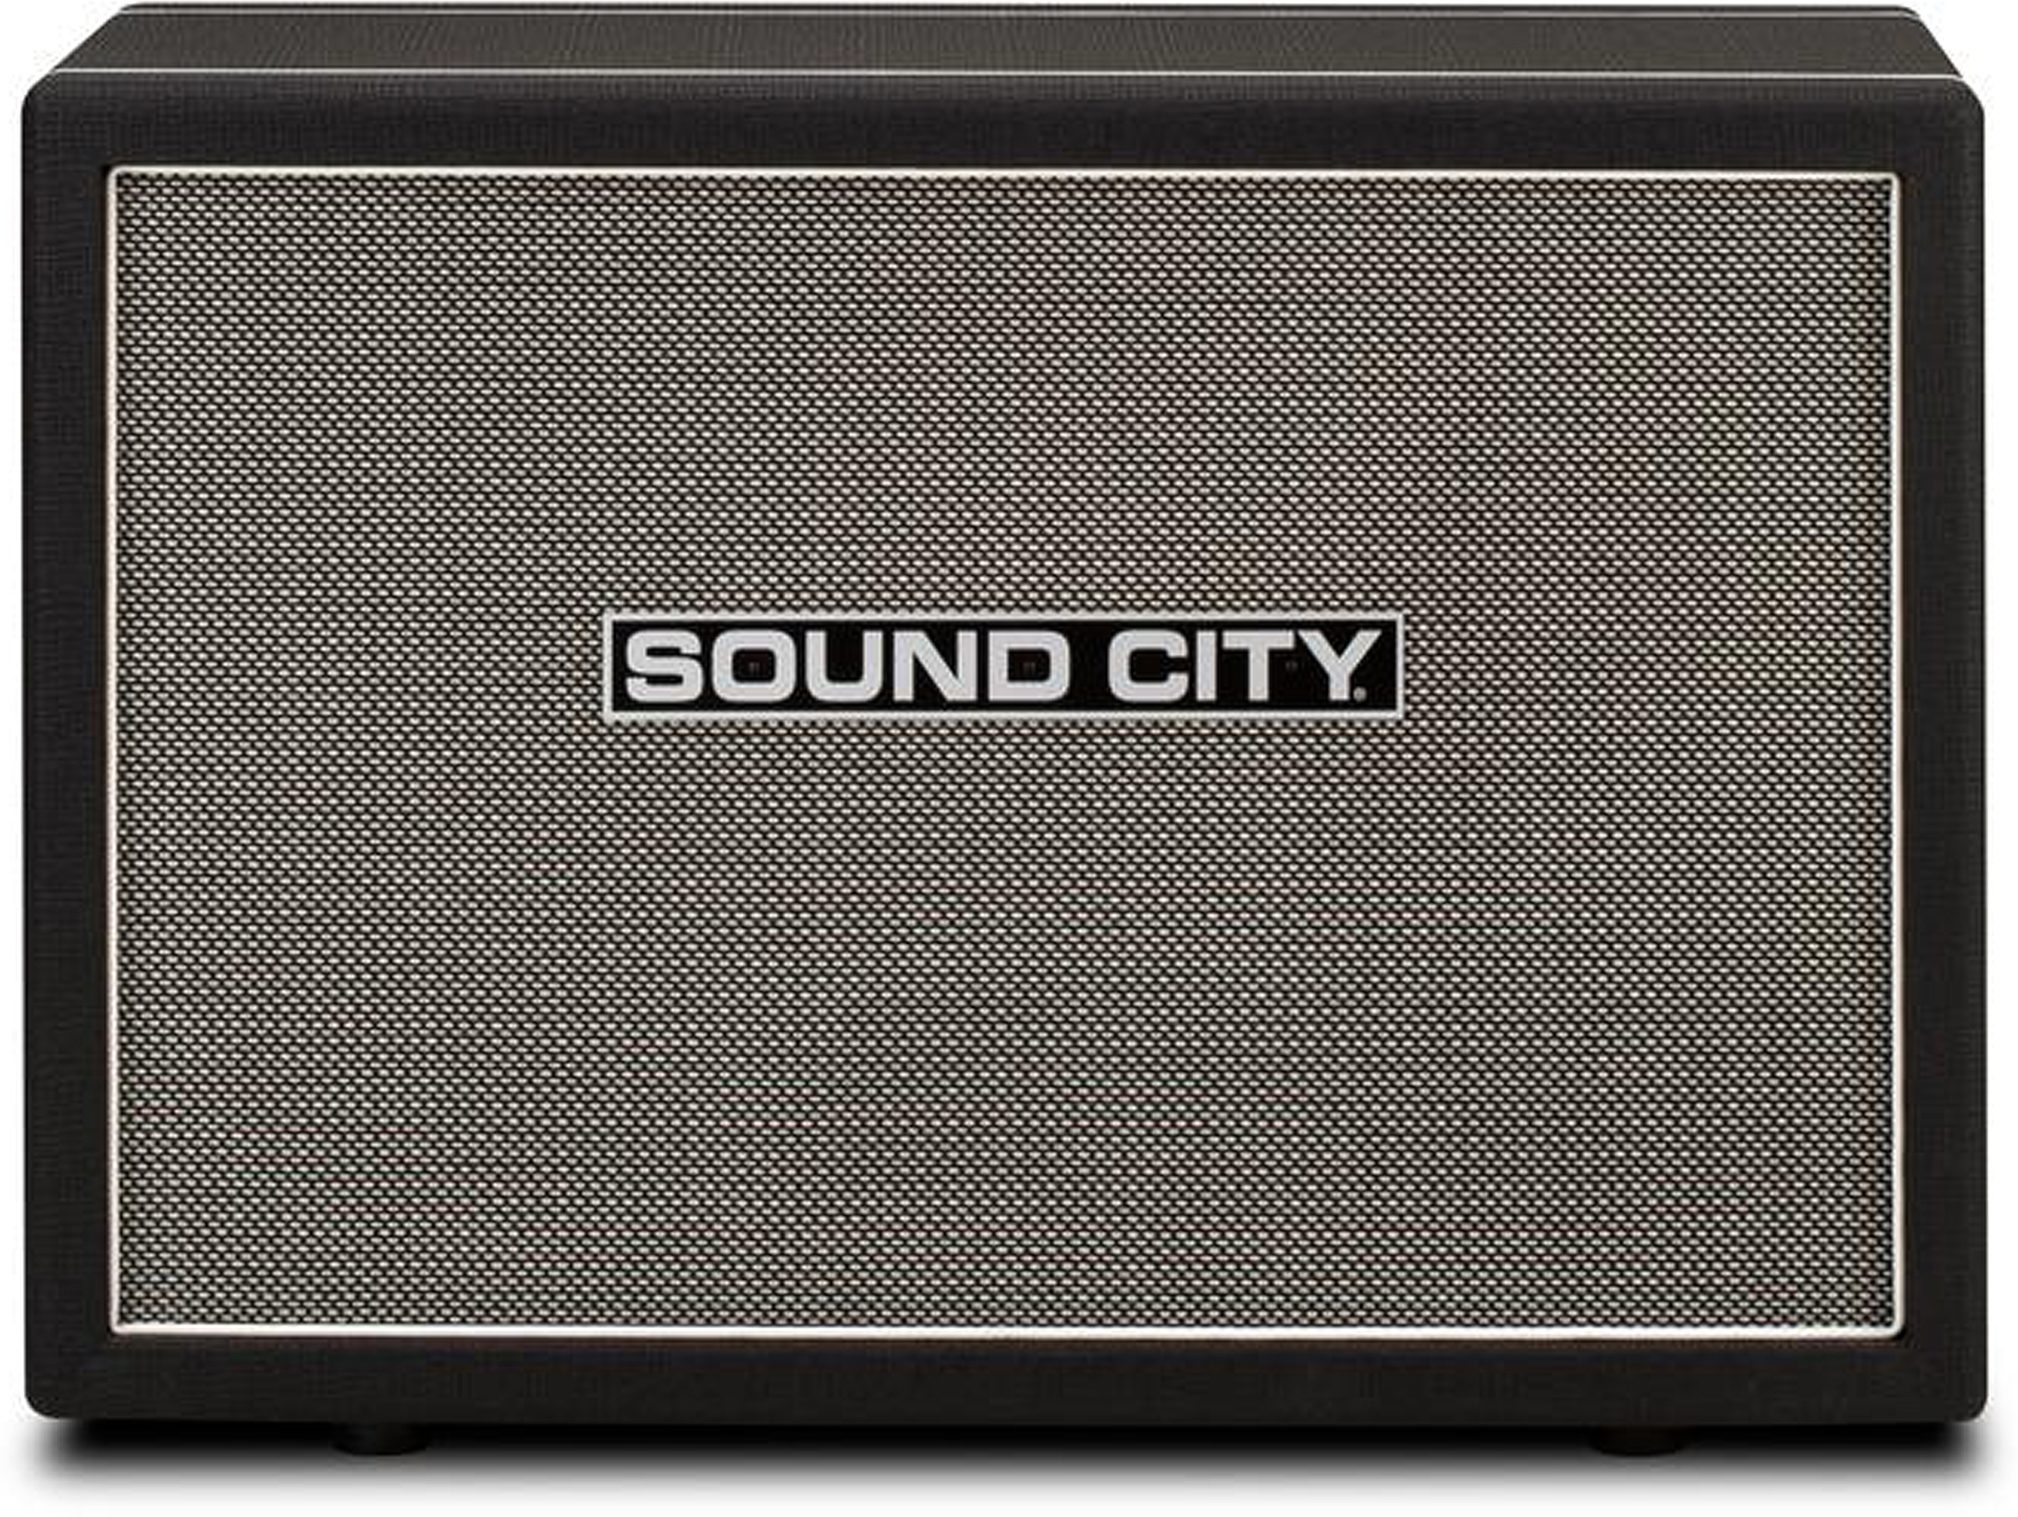 sound city speakers